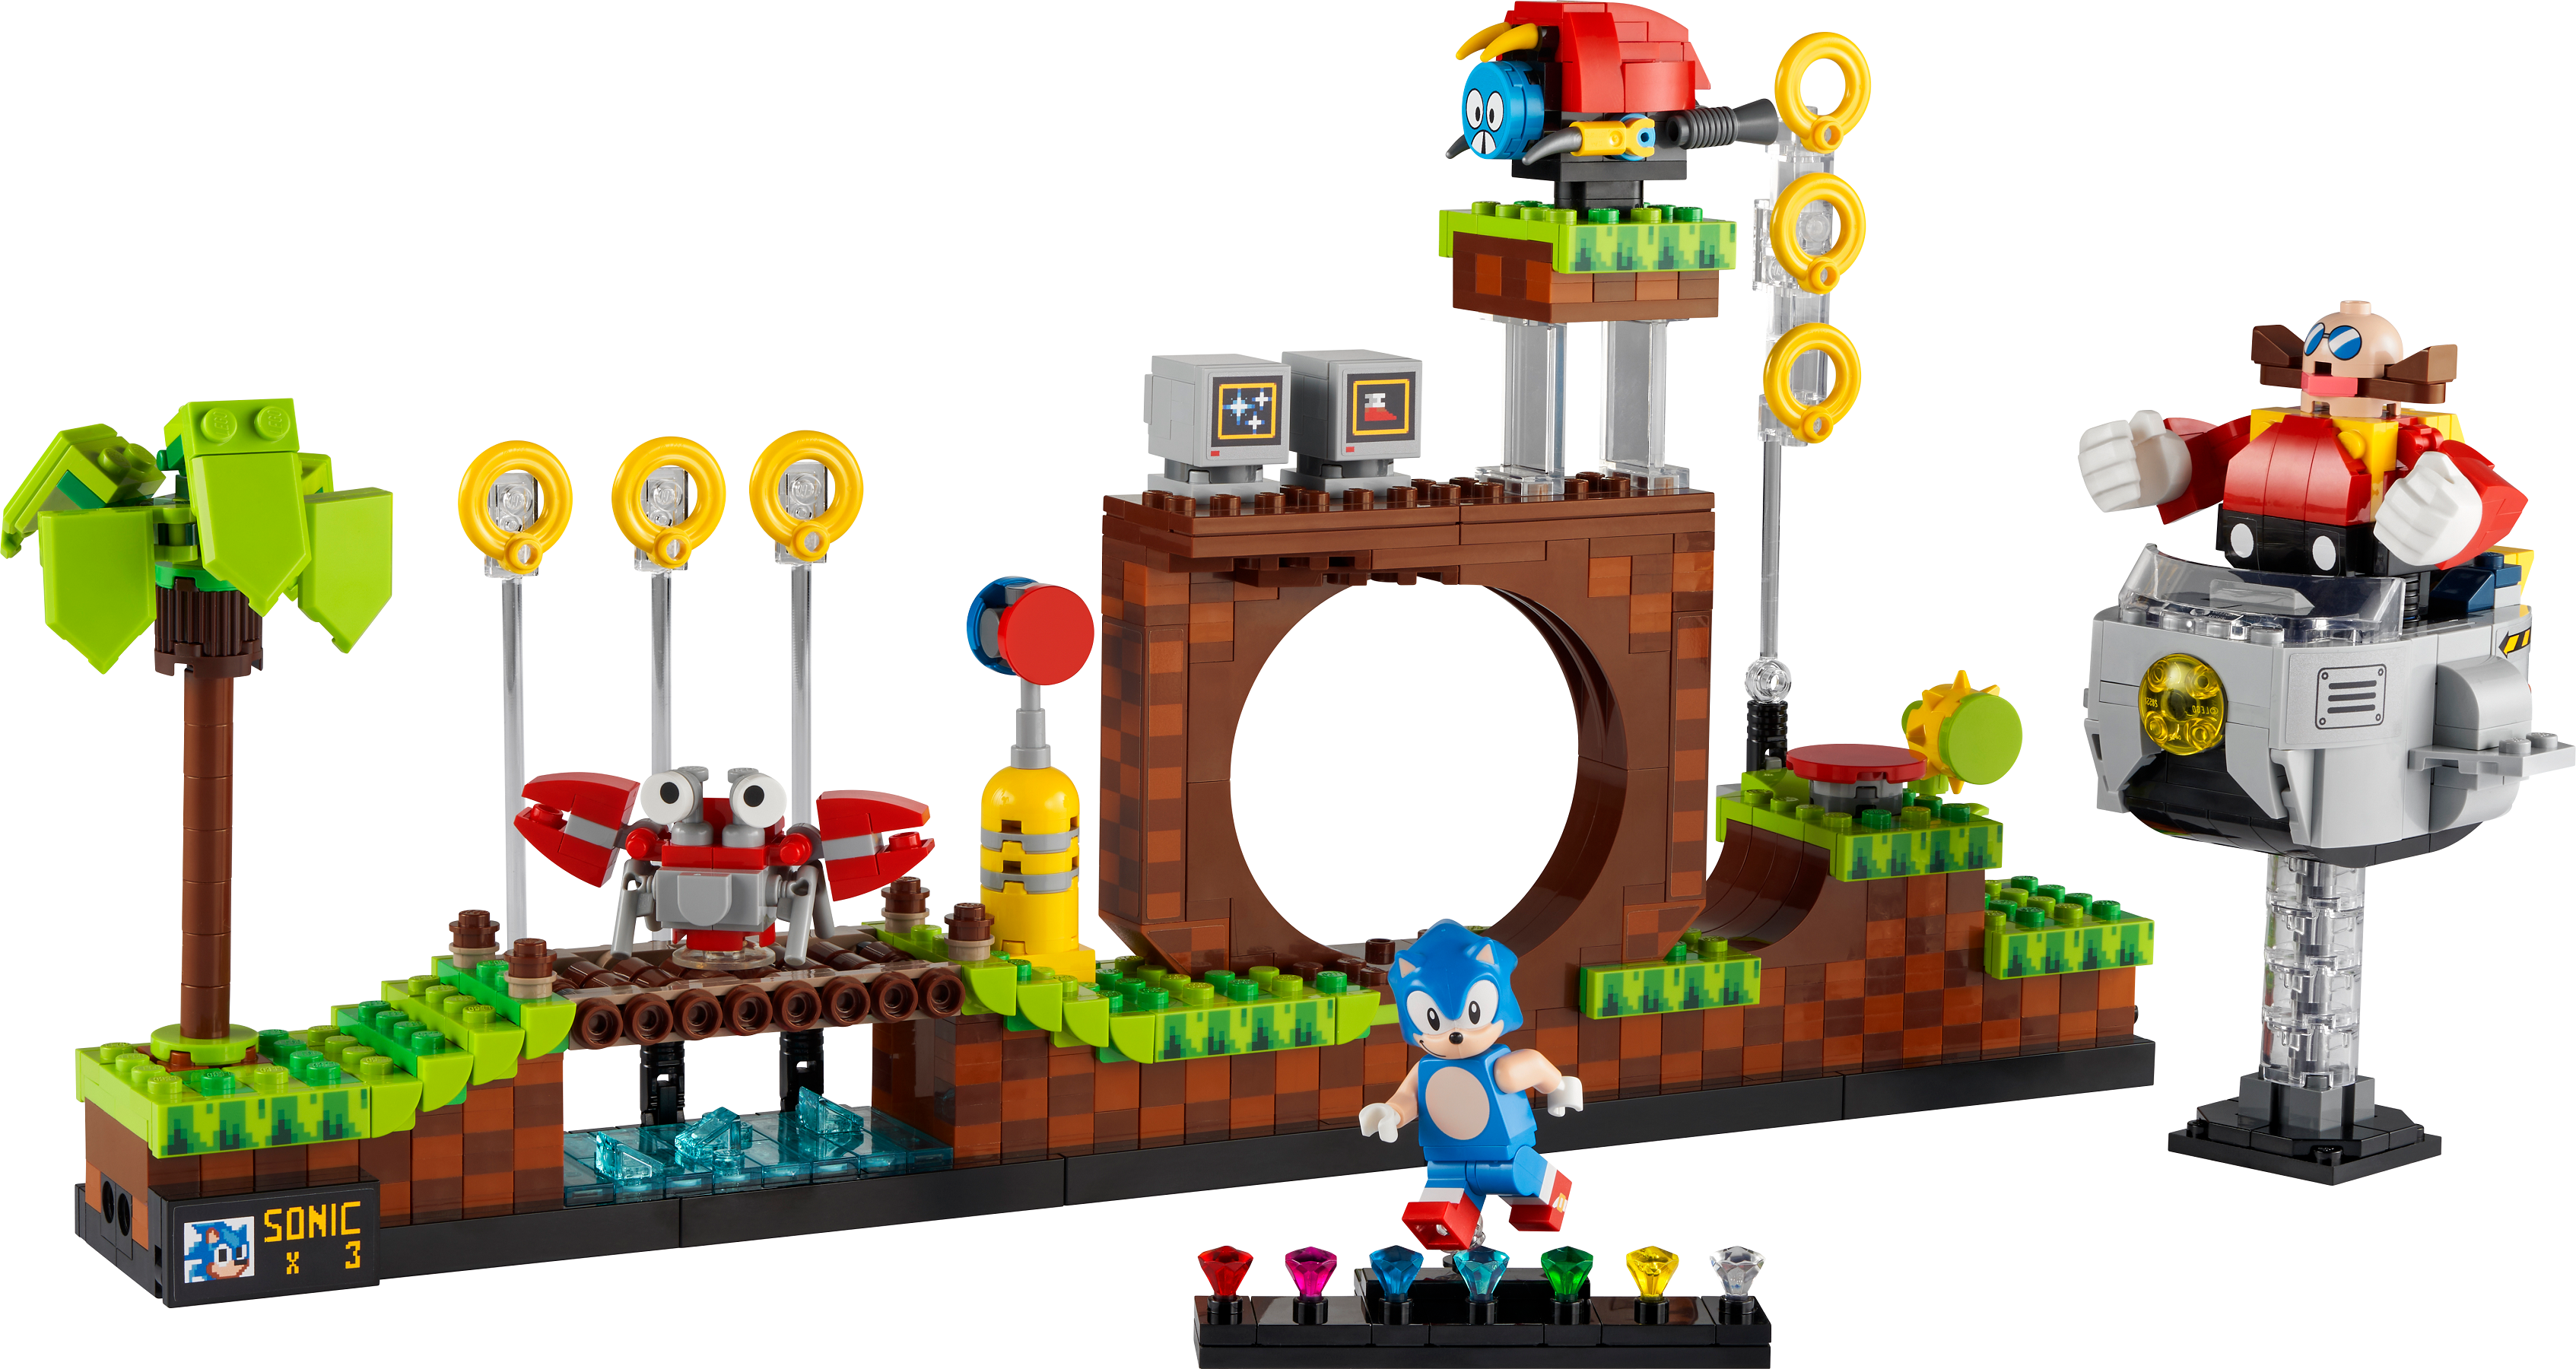 Custom Shadow Sonic the Hedgehog Minifigure Block Toy People on lego Bricks Sega 